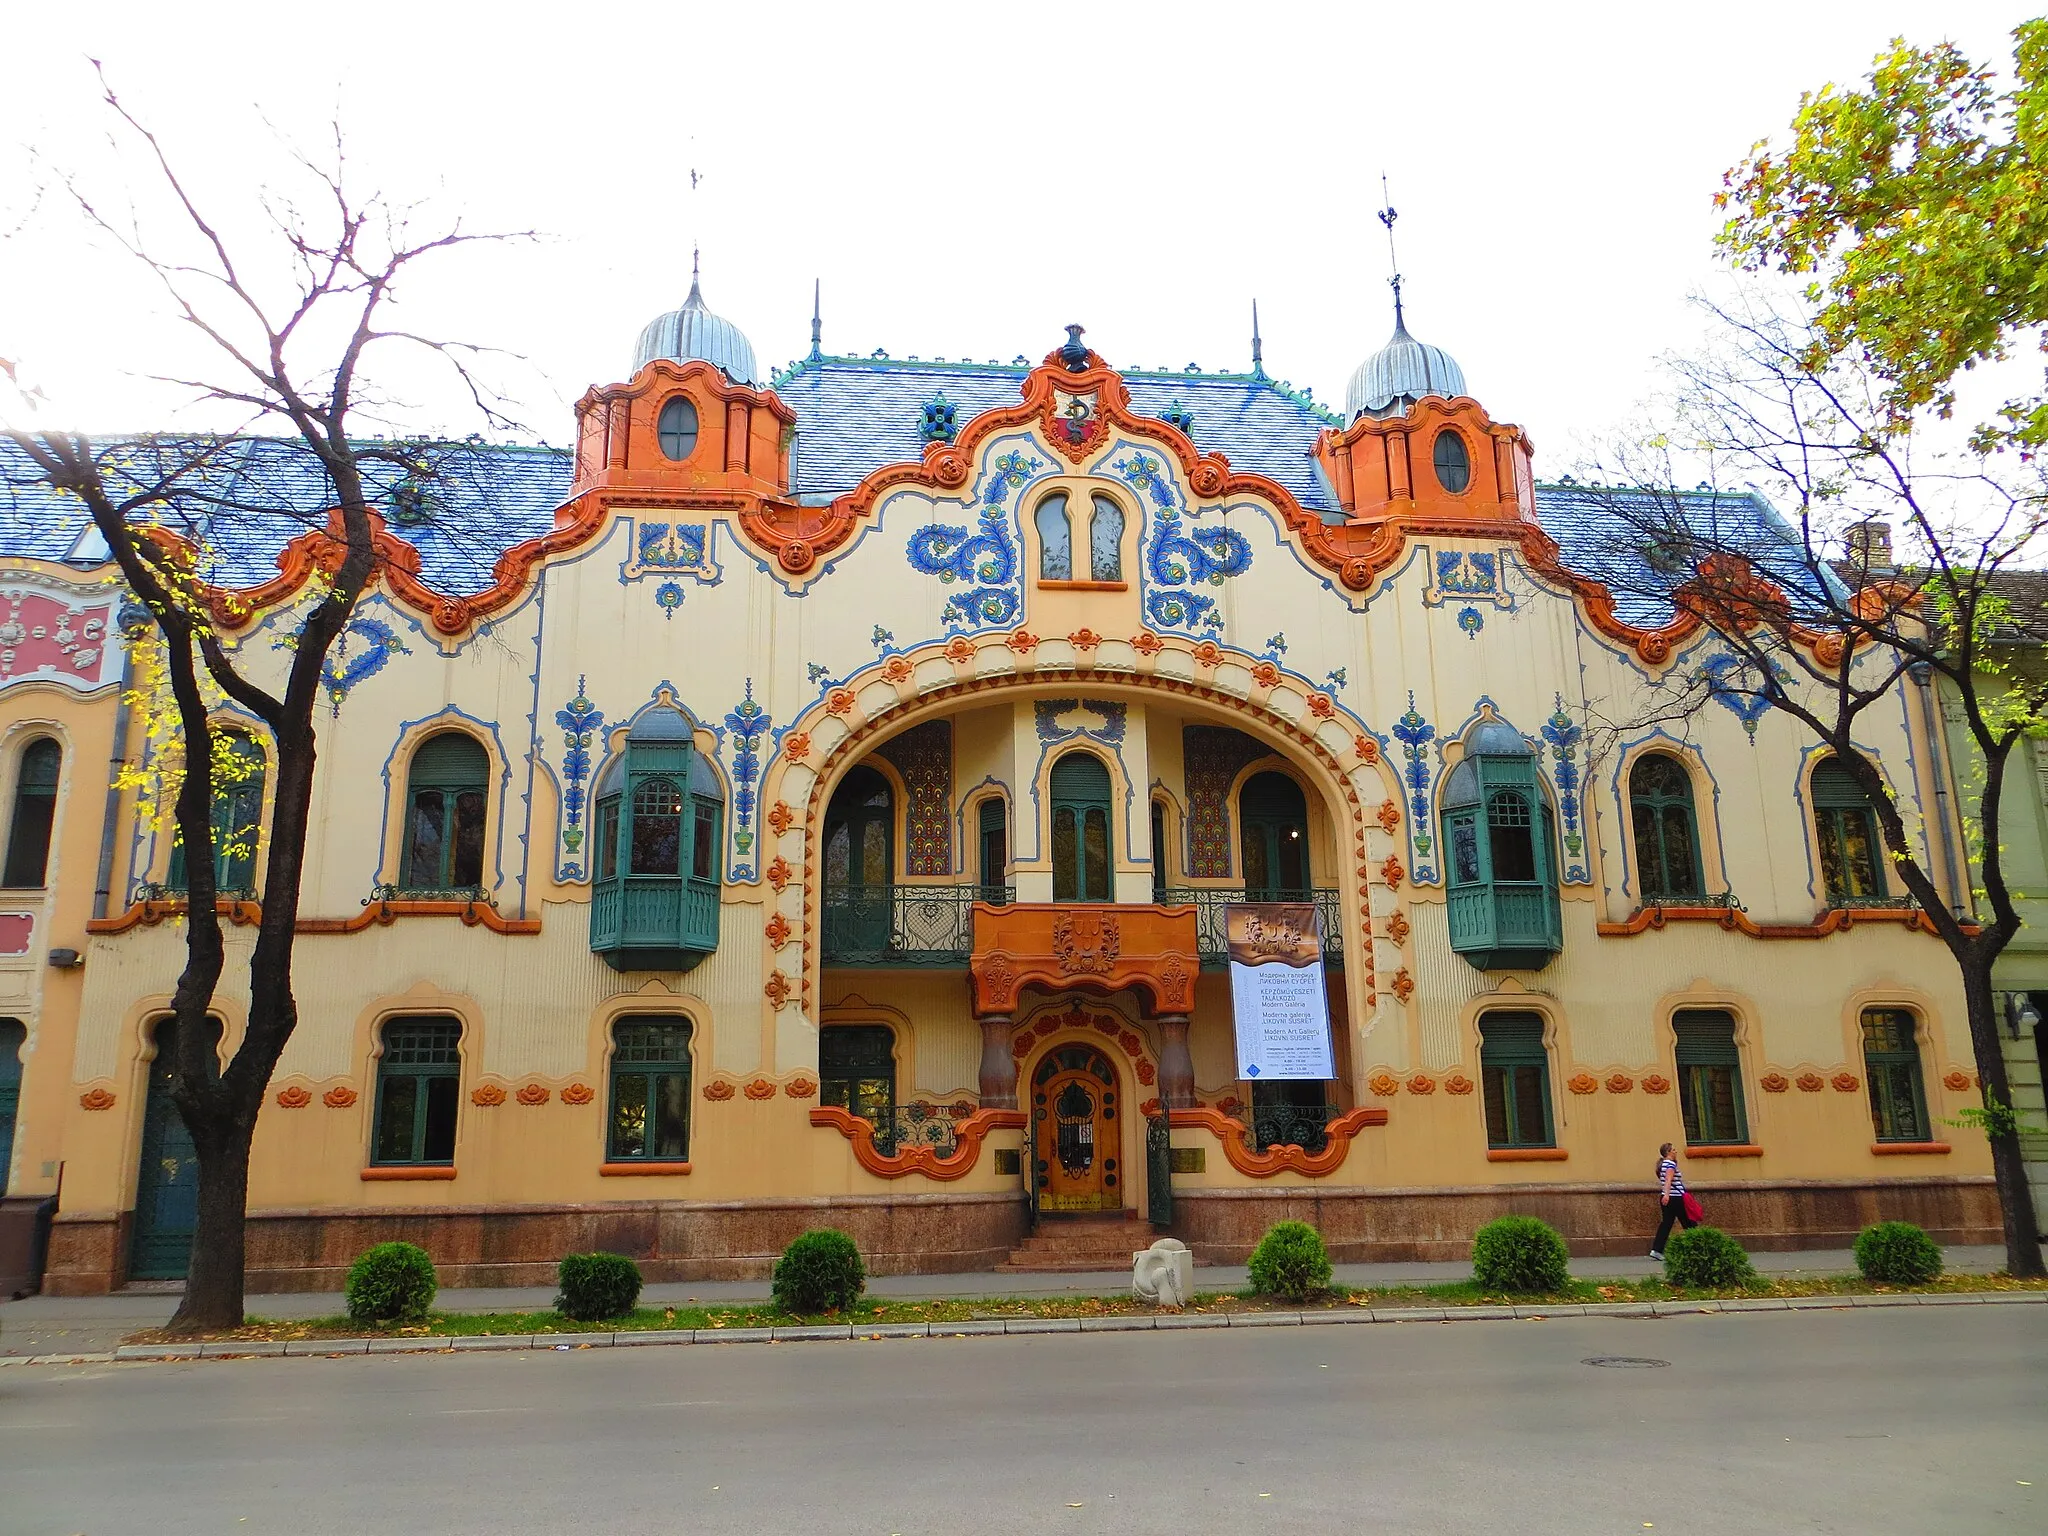 Image of Subotica